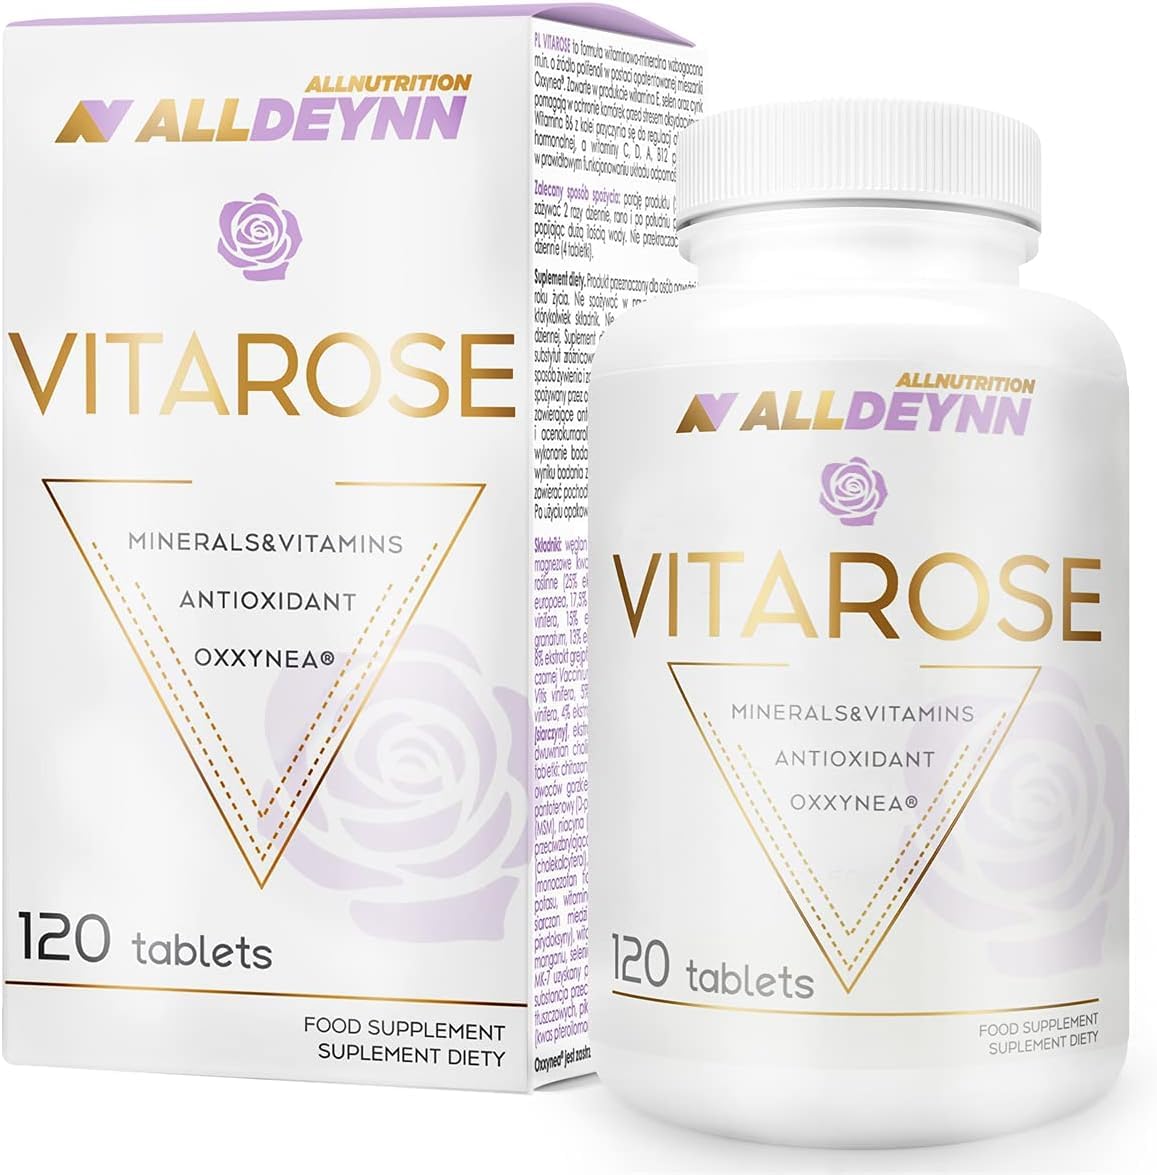 ALLNUTRITION Alldeynn Vitarose für Frauen Oxxynea-Komplex 22 Frucht- und Gemüseextrakt Antioxidans-Unterstützung verlangsamt den Alterungsprozess 120 Pillen 60 Portionen pro Packung